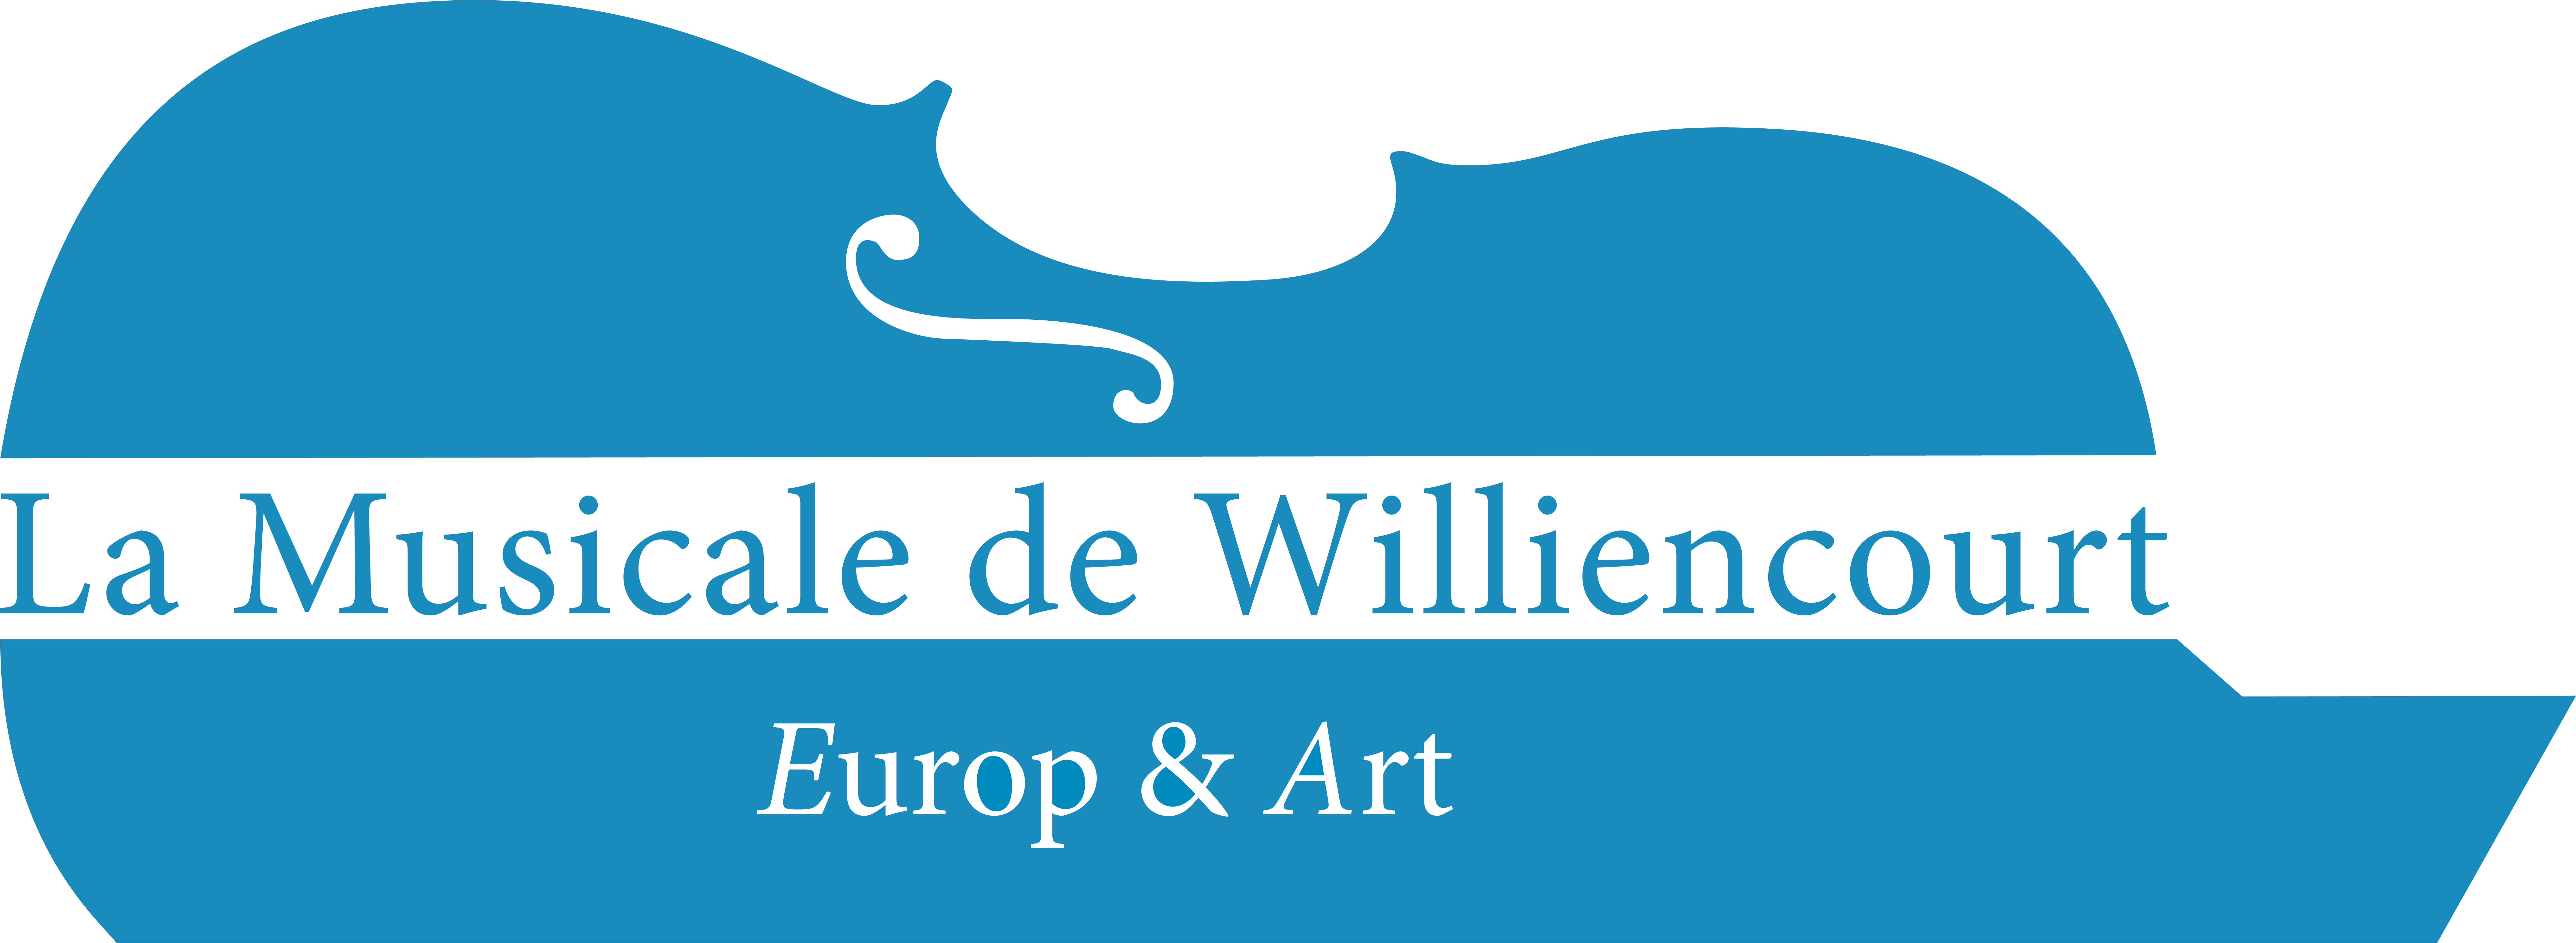 Europ & Art - Logo (Bleu 26 139 189)